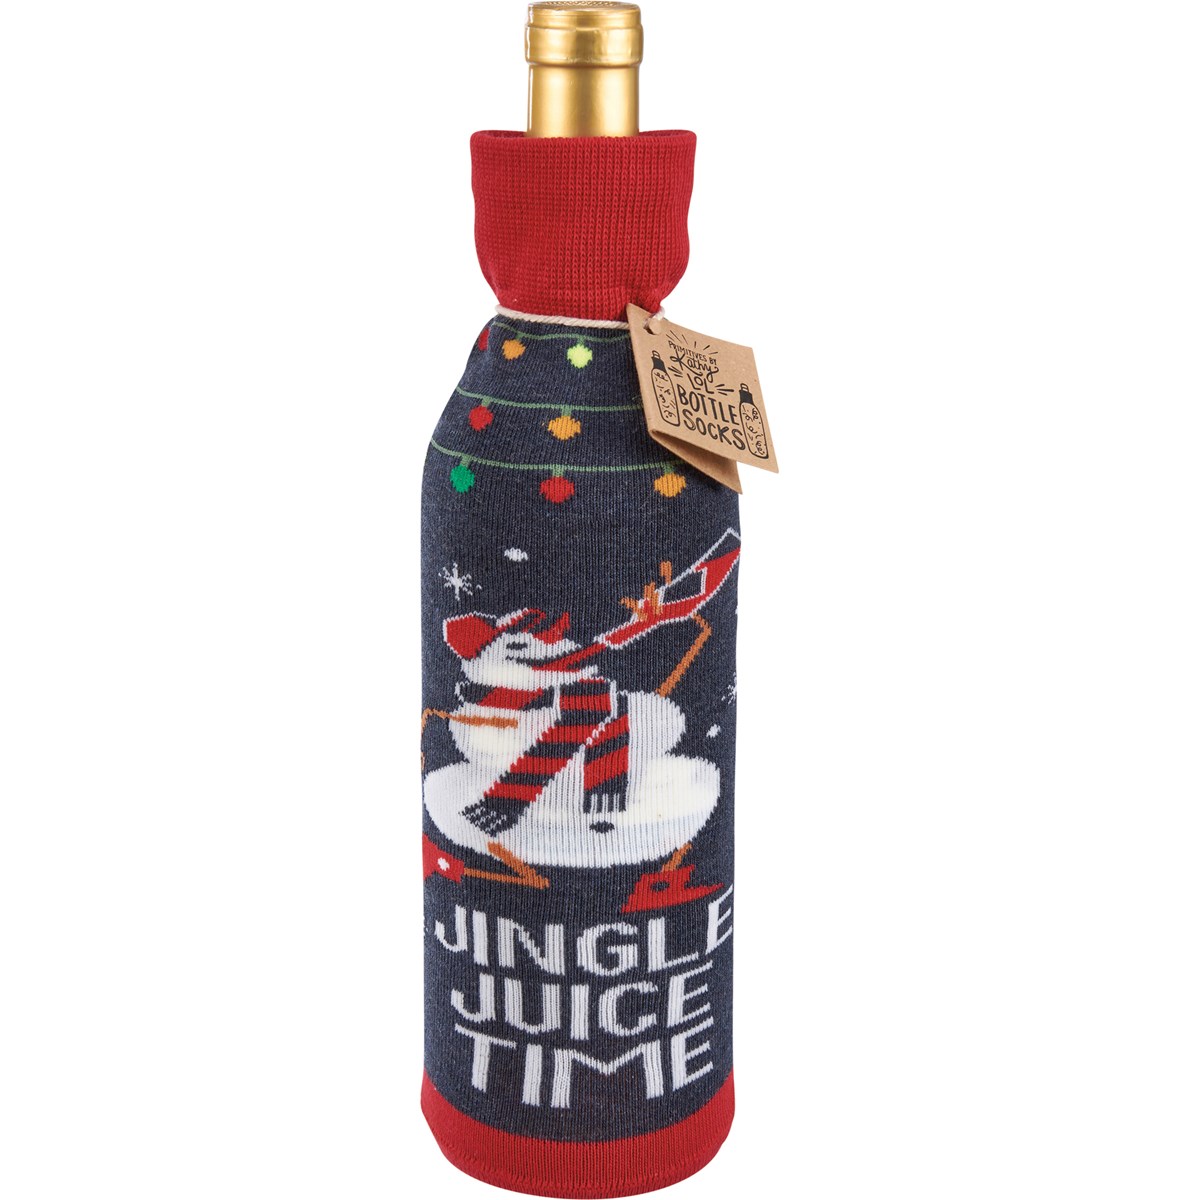 Jingle Juice Time Bottle Sock - Cotton, Nylon, Spandex